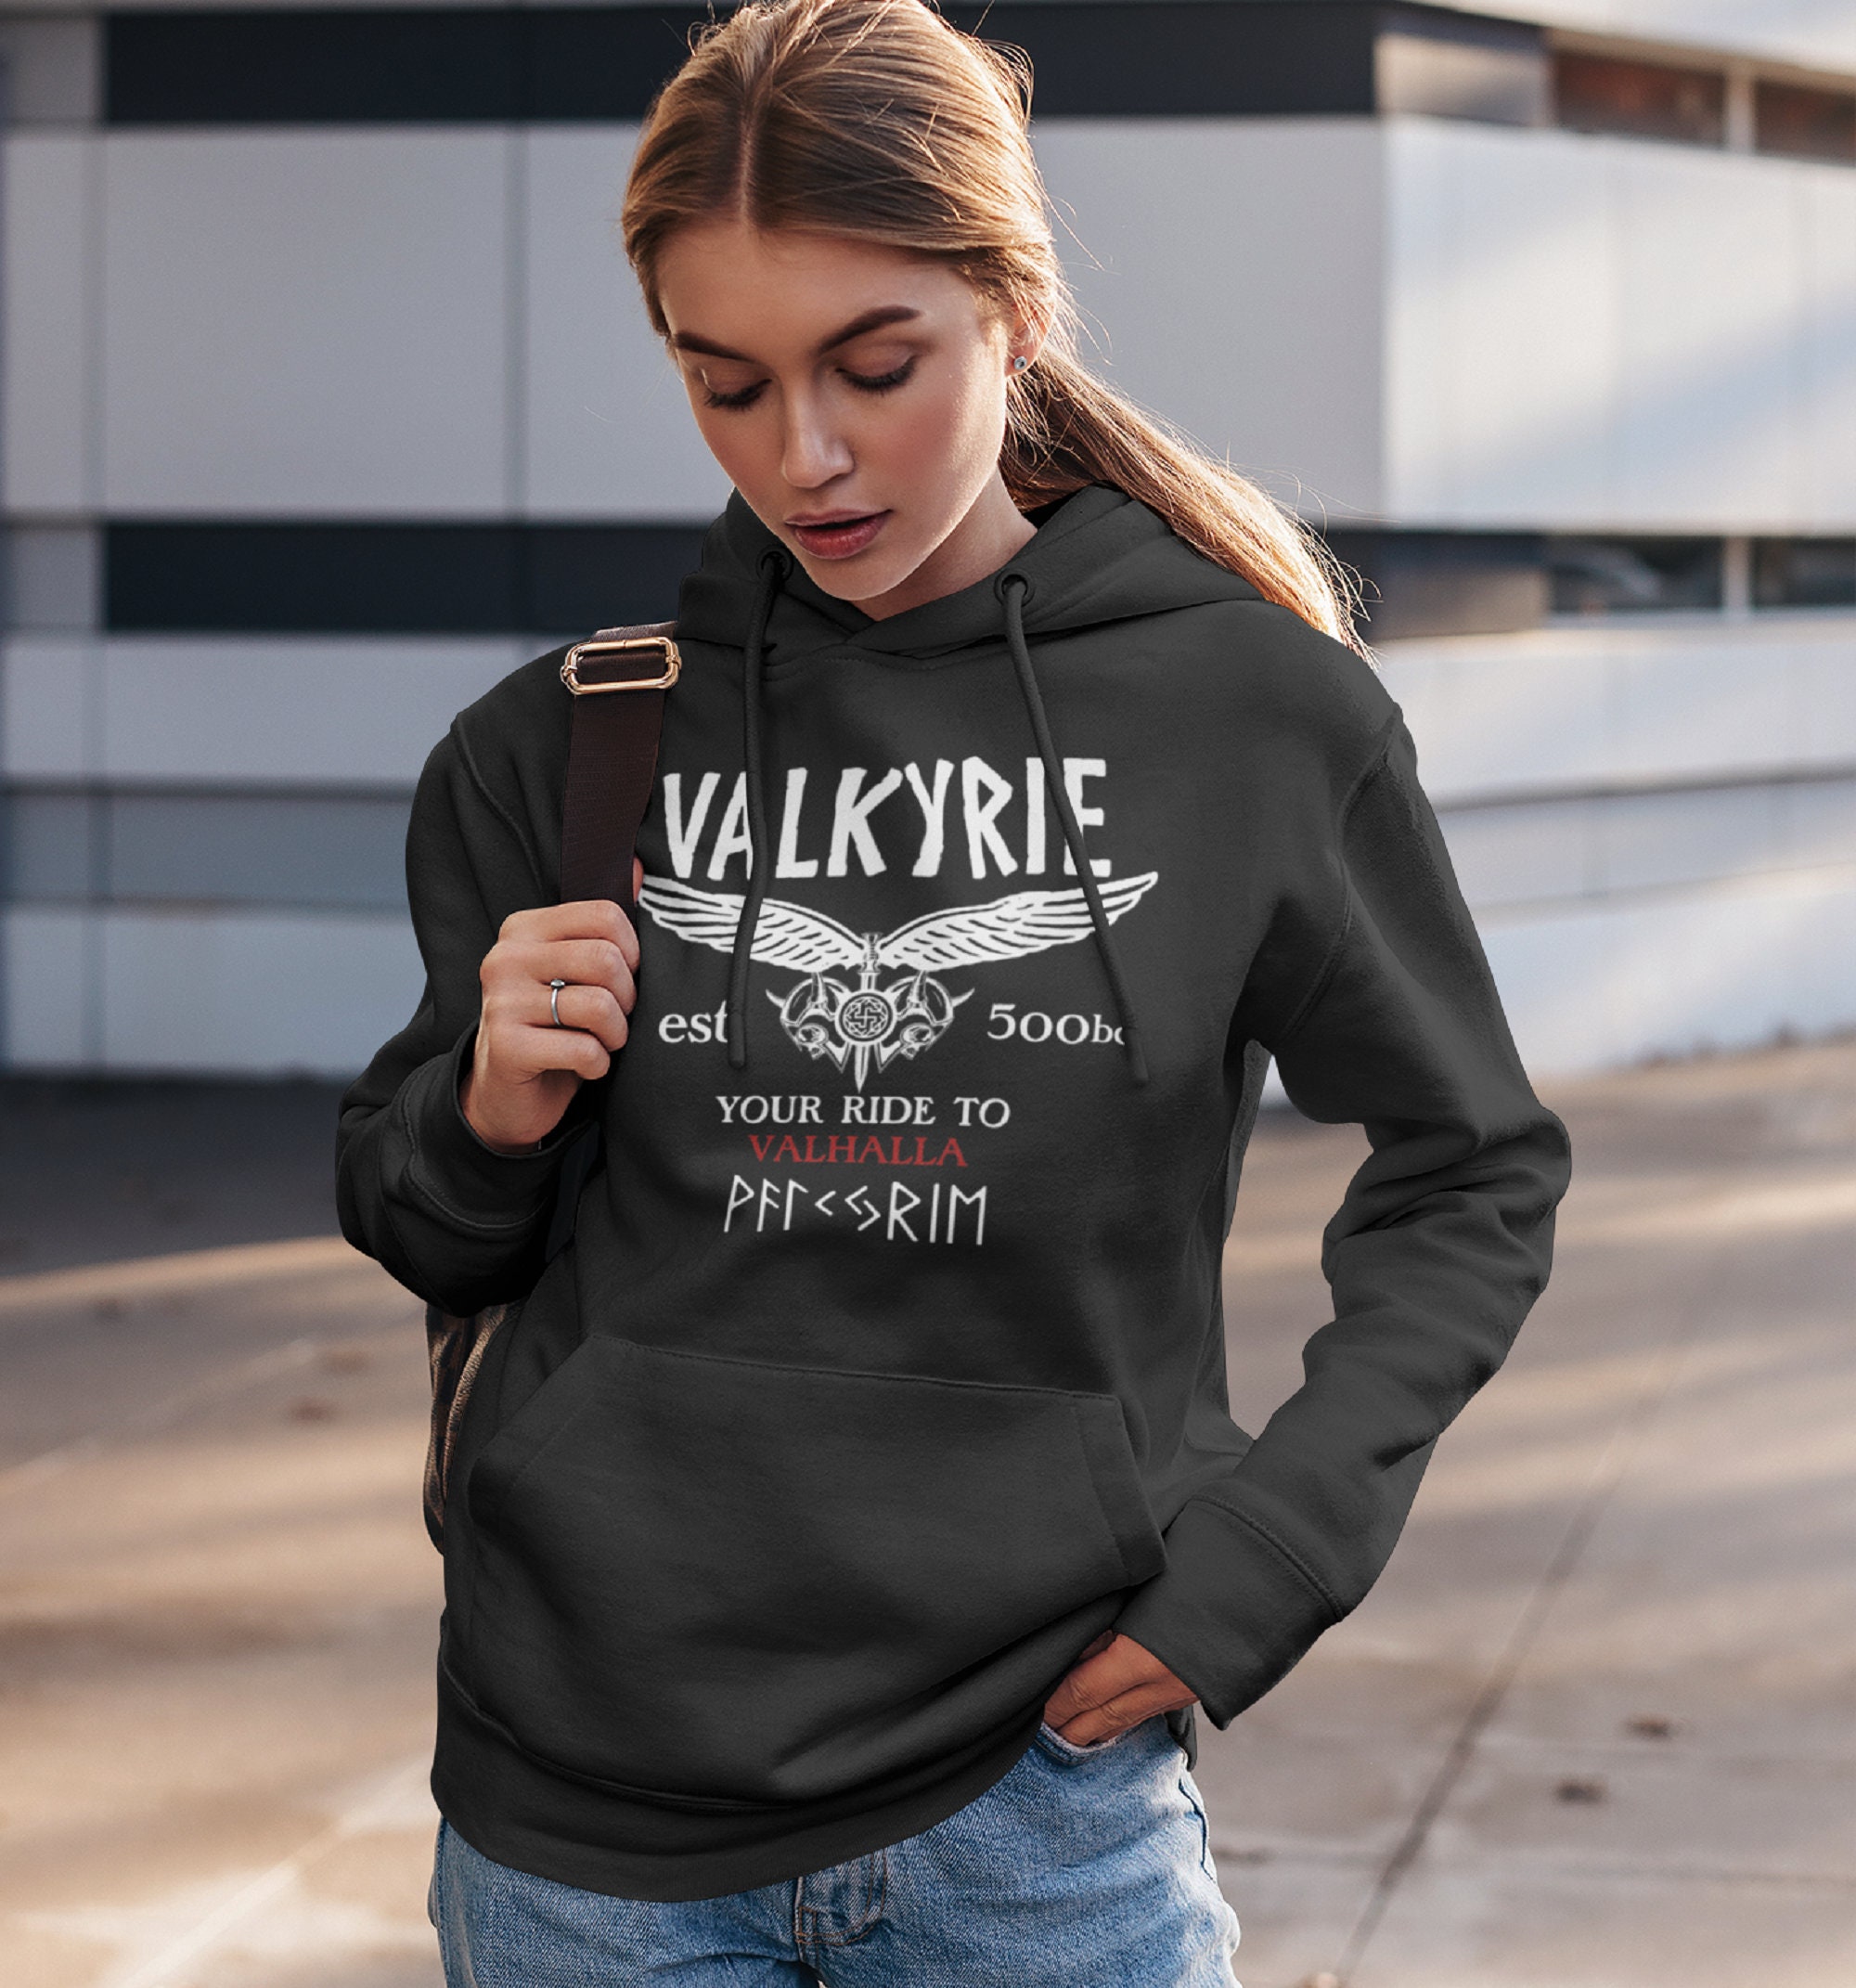 Valkyrie Women's Heavy Blend Hooded Sweatshirt